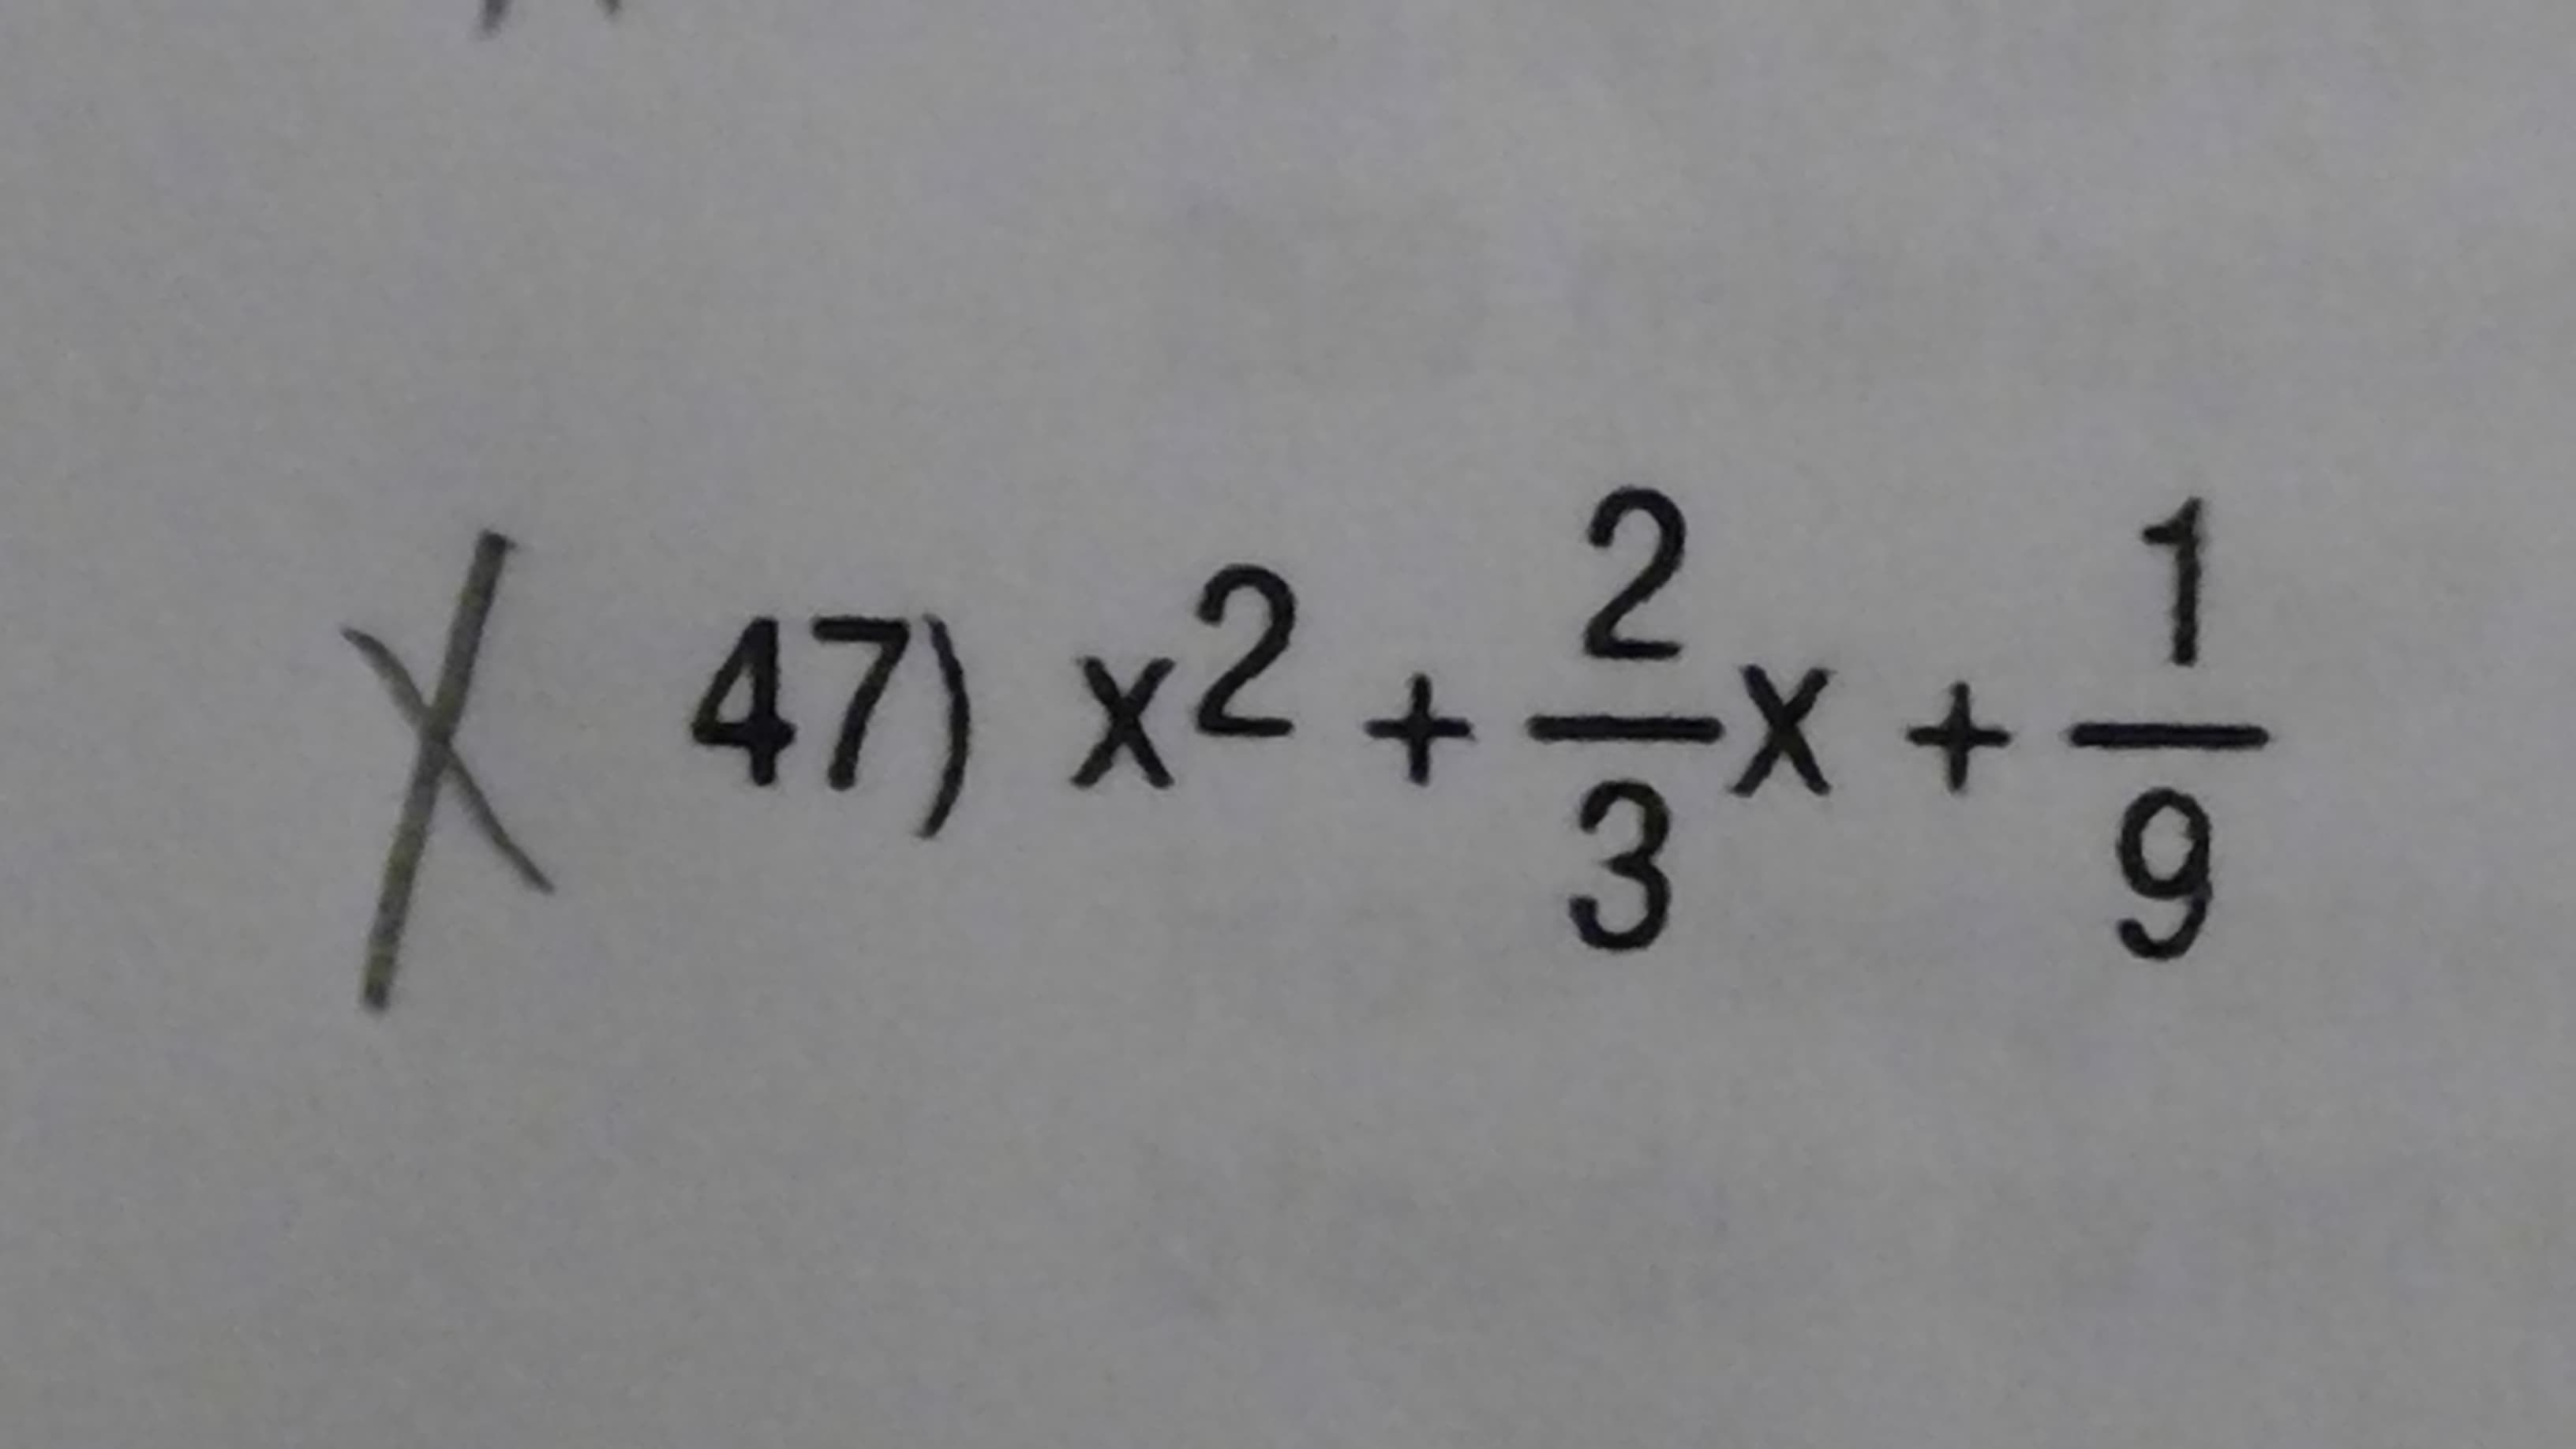 X 47) x2 +를x+1
3
9
